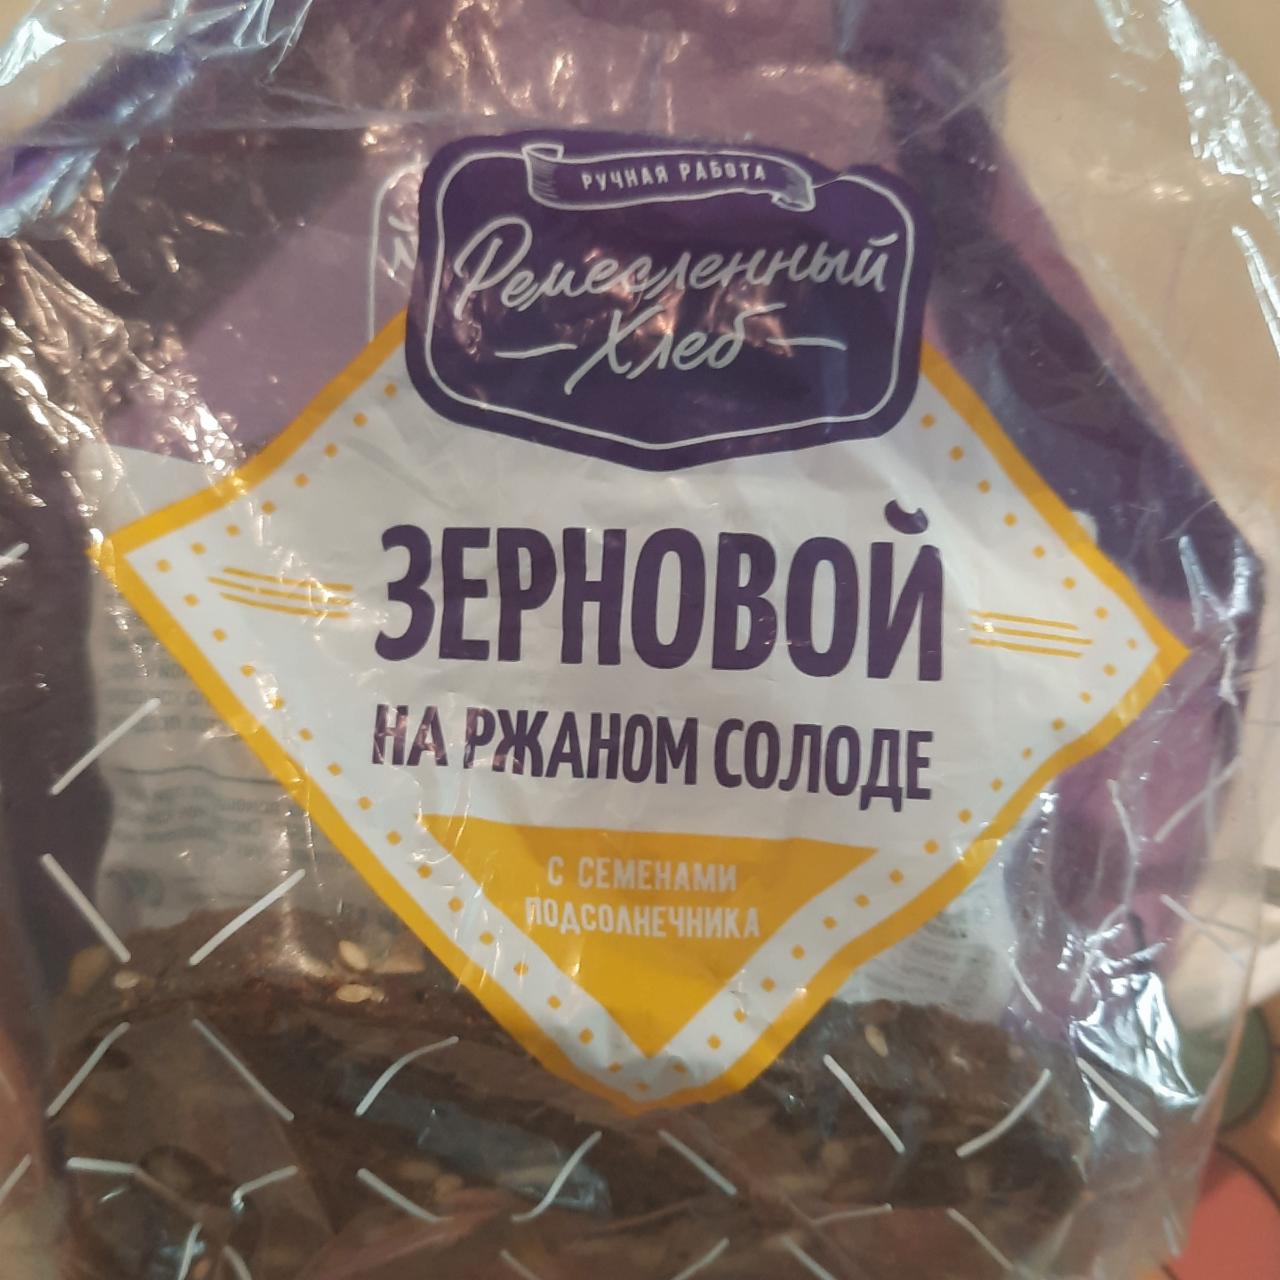 Фото - Хлеб зерновой на ржаном солоде с семенами подсолнечника Ремесленный хлеб